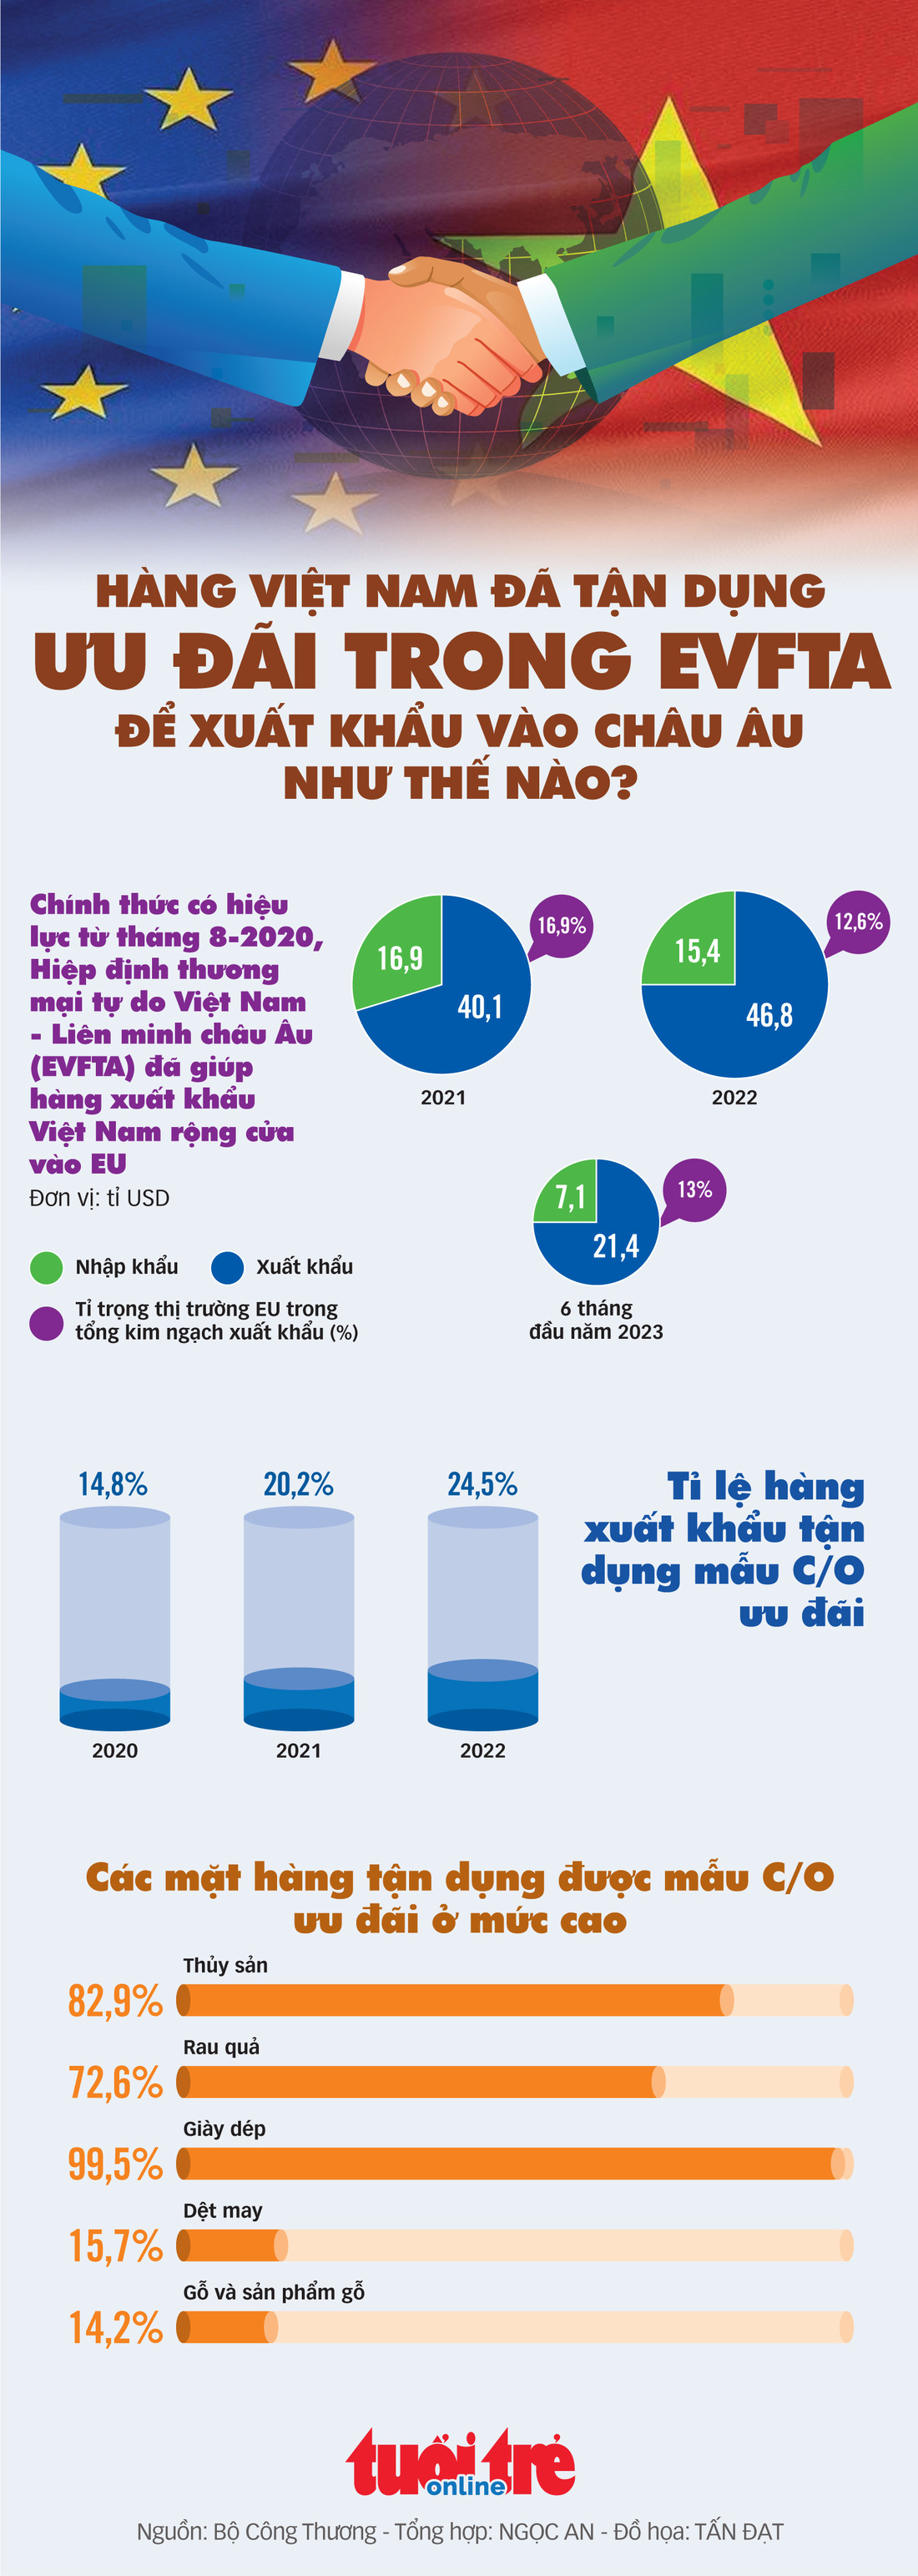 Hàng Việt Nam đã tận dụng ưu đãi trong EVFTA để xuất khẩu vào châu Âu thế nào? - Ảnh 1.